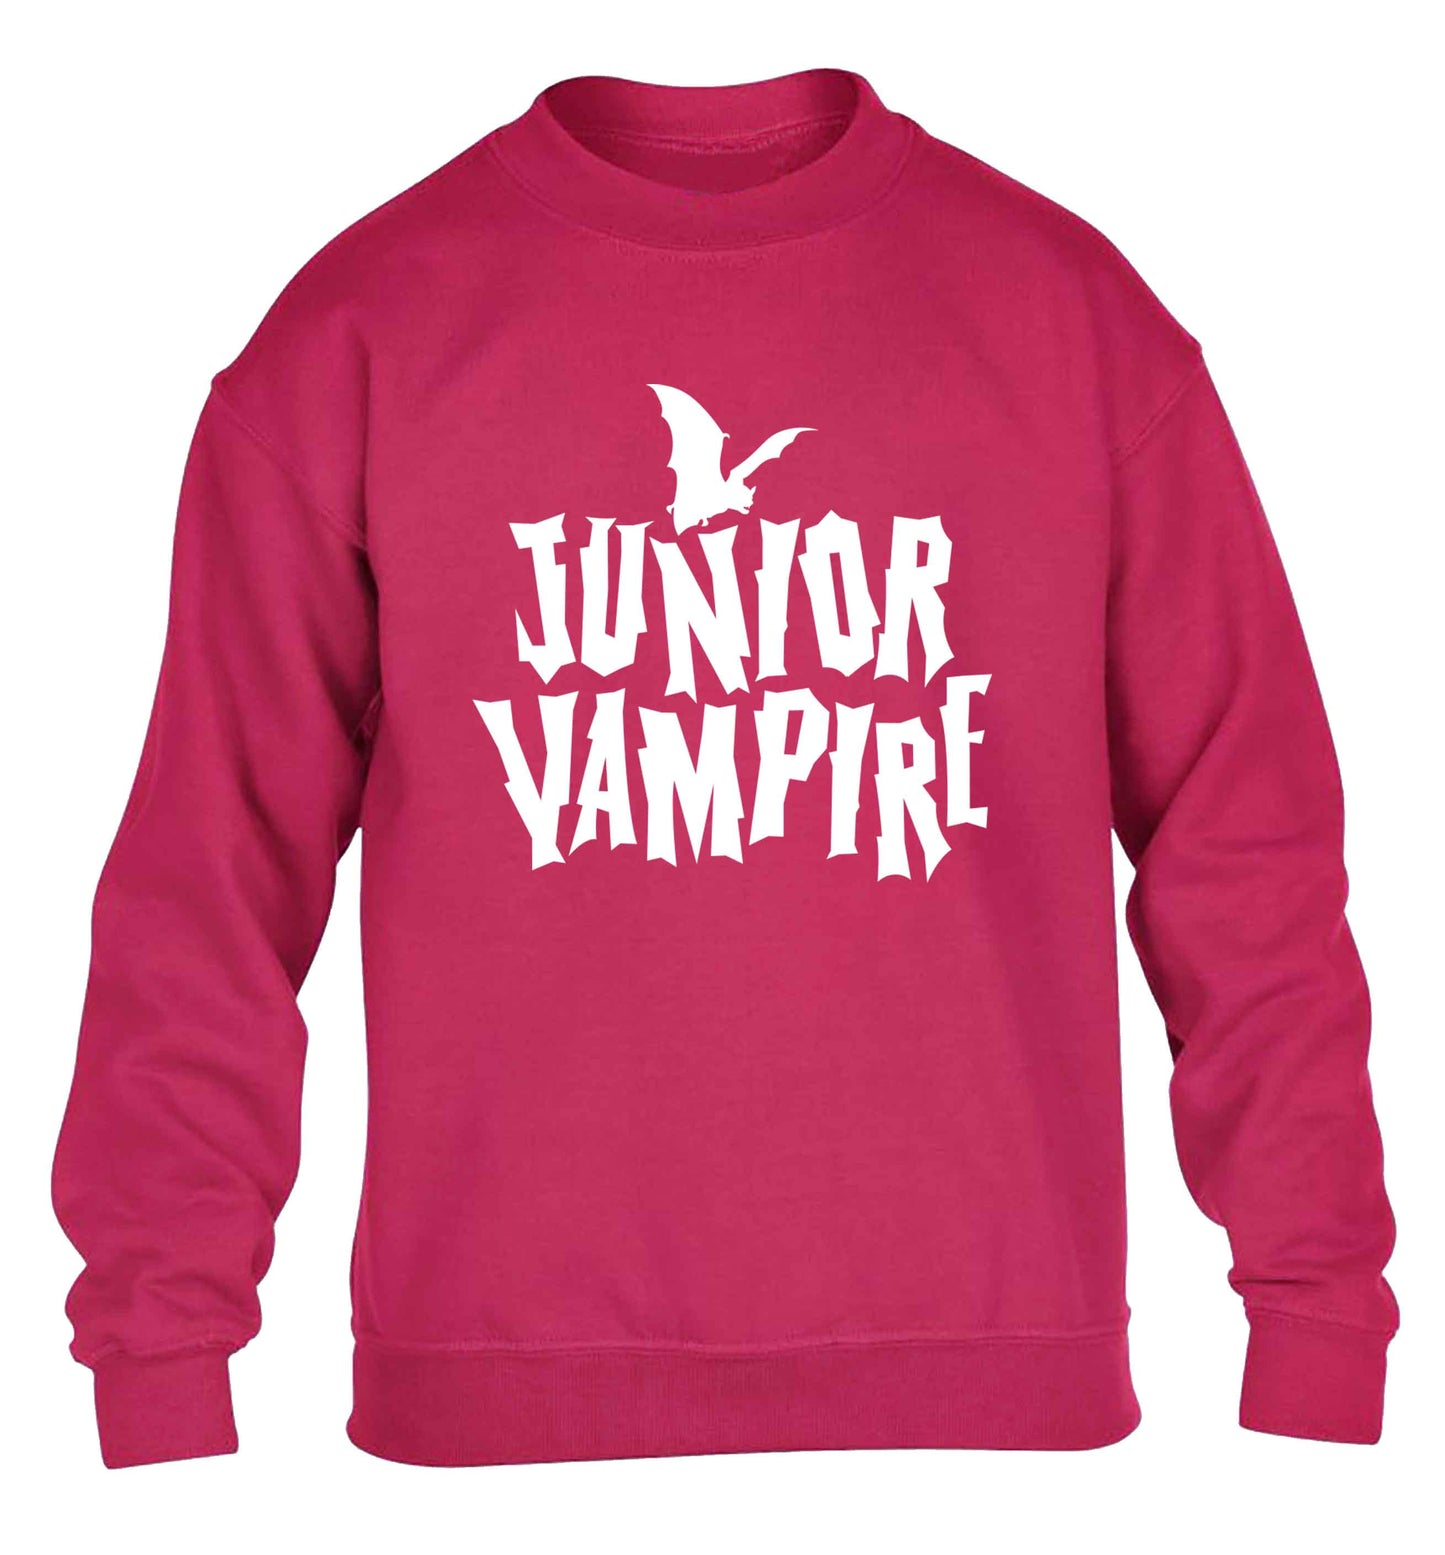 Junior vampire children's pink sweater 12-13 Years